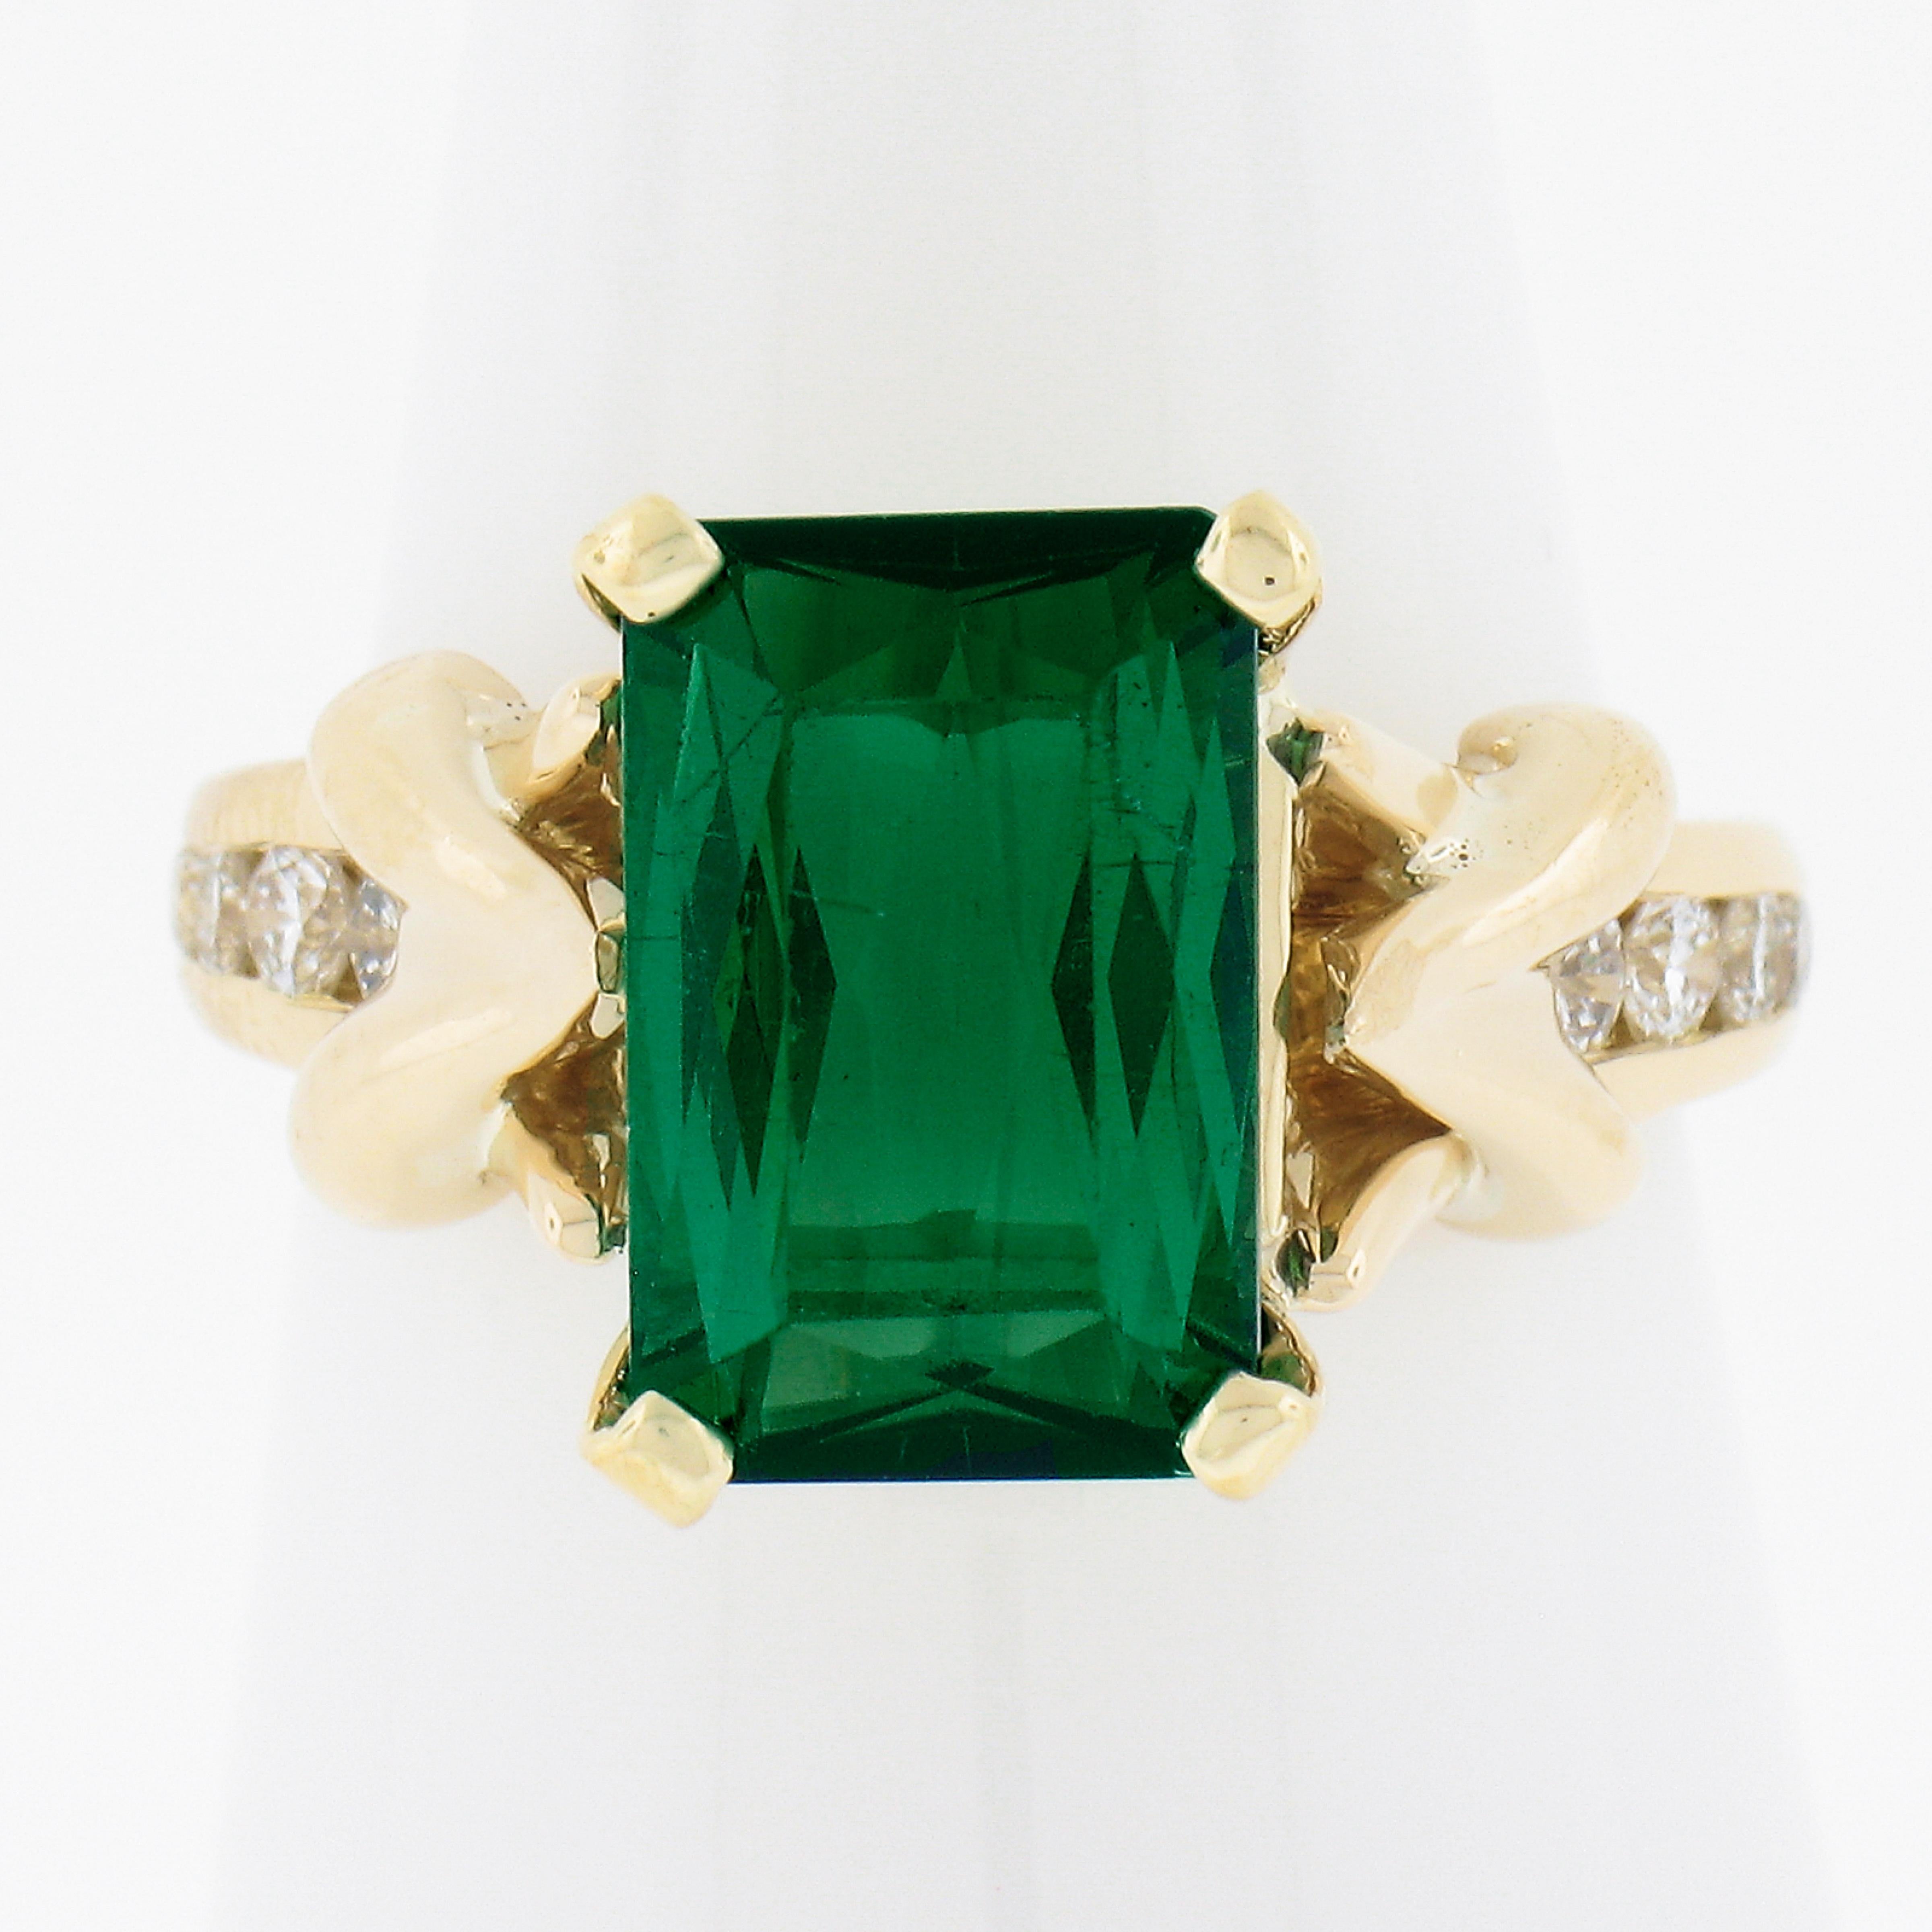 --Pierre(s) :...
(1) Tourmaline véritable naturelle - taille rectangulaire - sertie - couleur vert vif - 11.5x7.5mm (approx.) - 3.5ct (approx.)
(8) Diamants naturels authentiques - taille ronde et brillante - en serti clos - couleur G/H - pureté